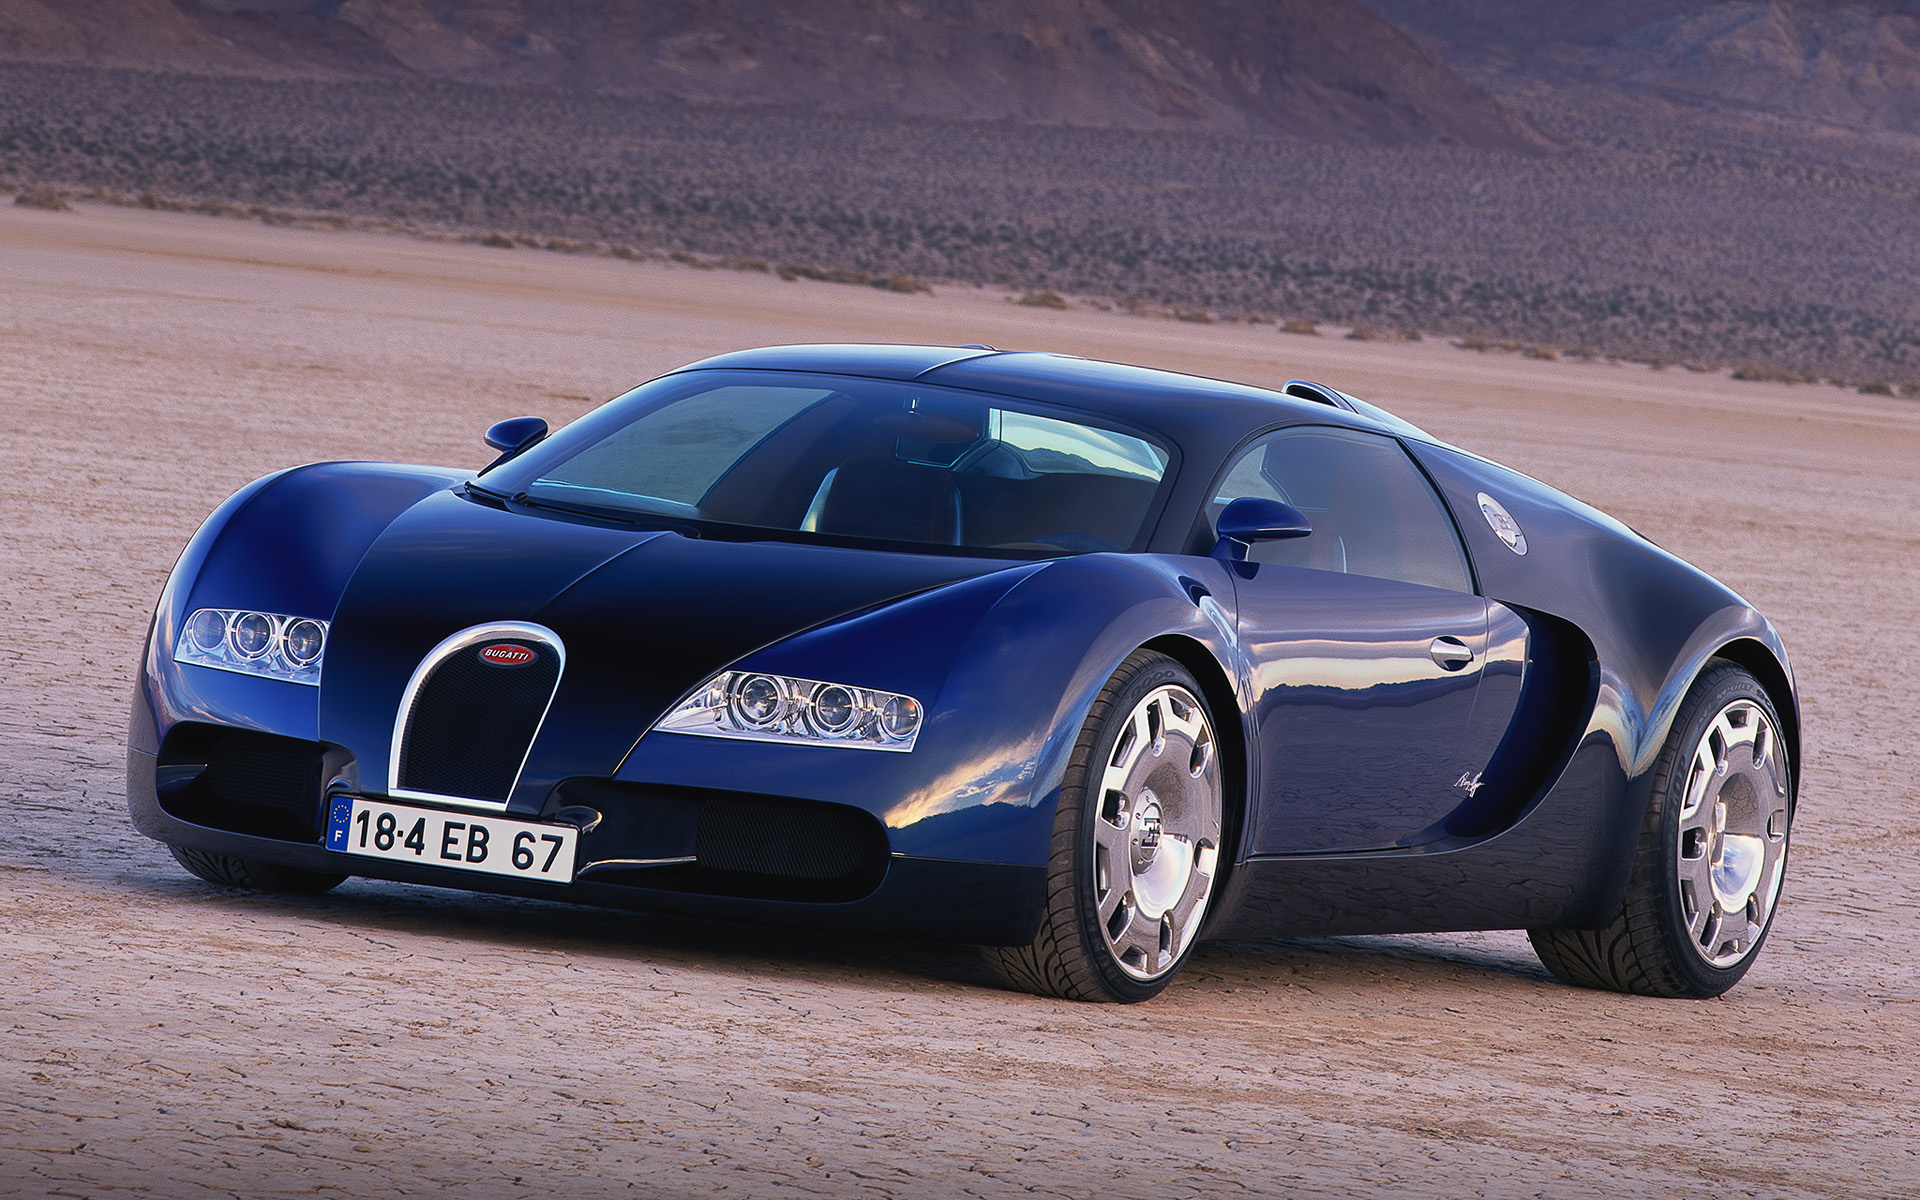  1999 Bugatti EB 18.4 Veyron Concept Wallpaper.